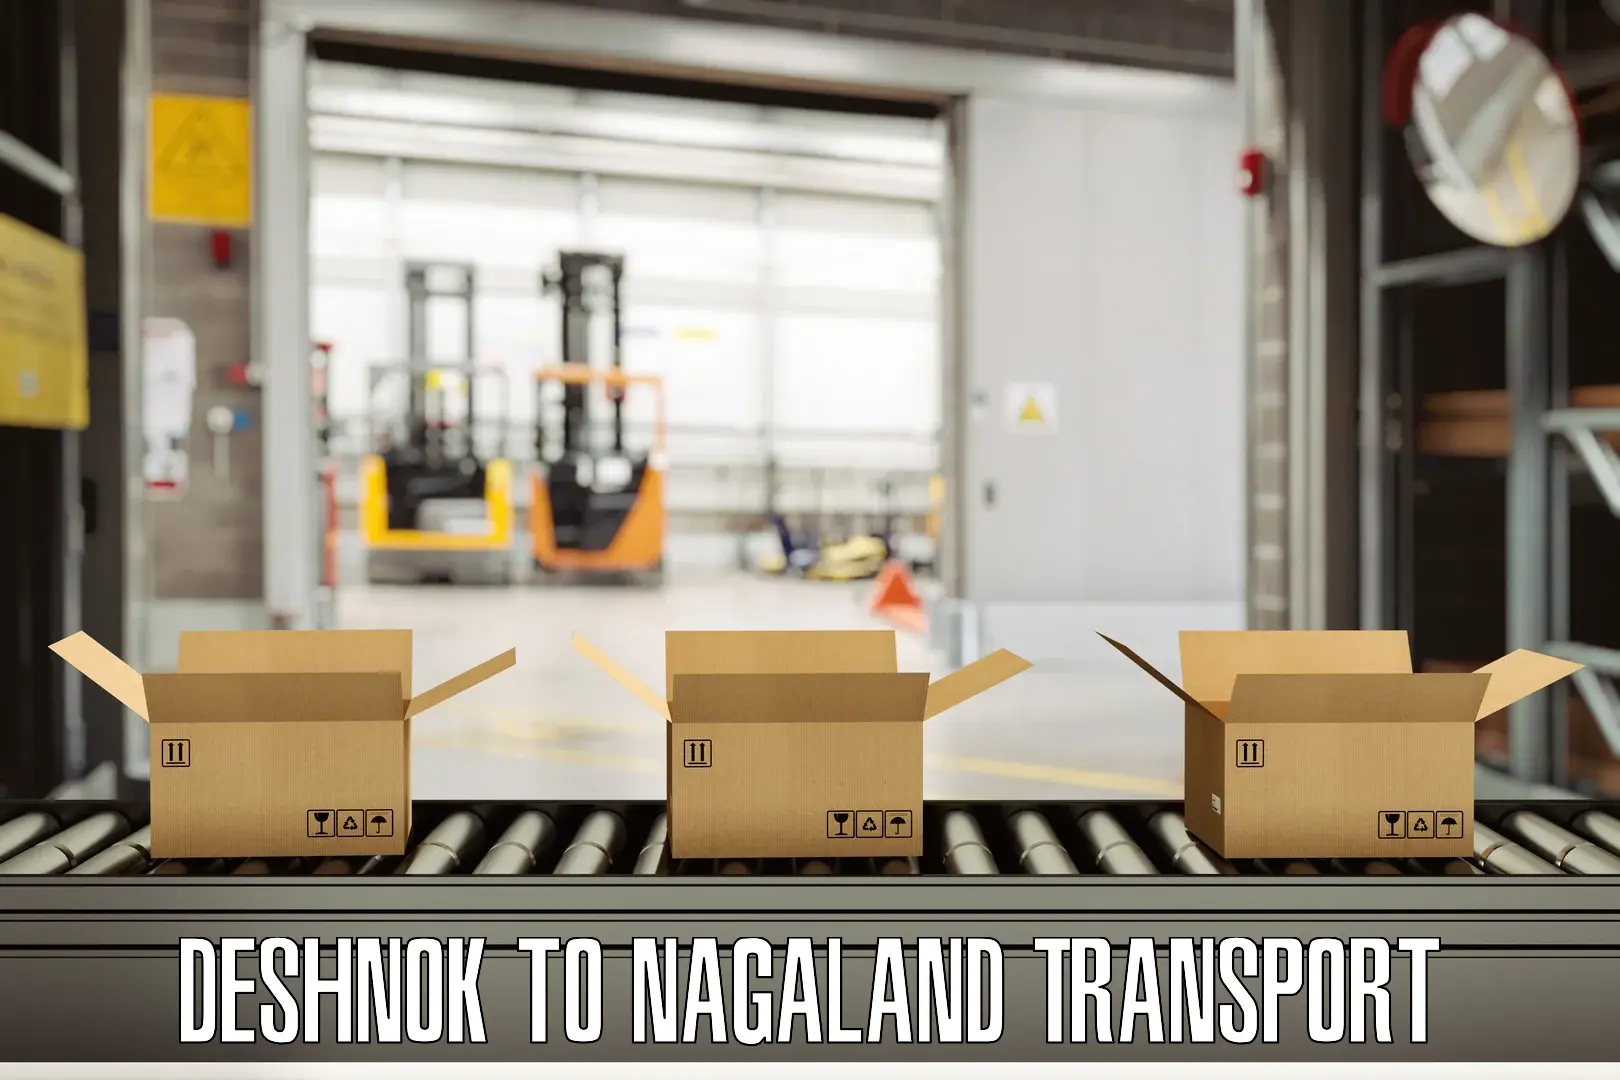 Delivery service Deshnok to NIT Nagaland